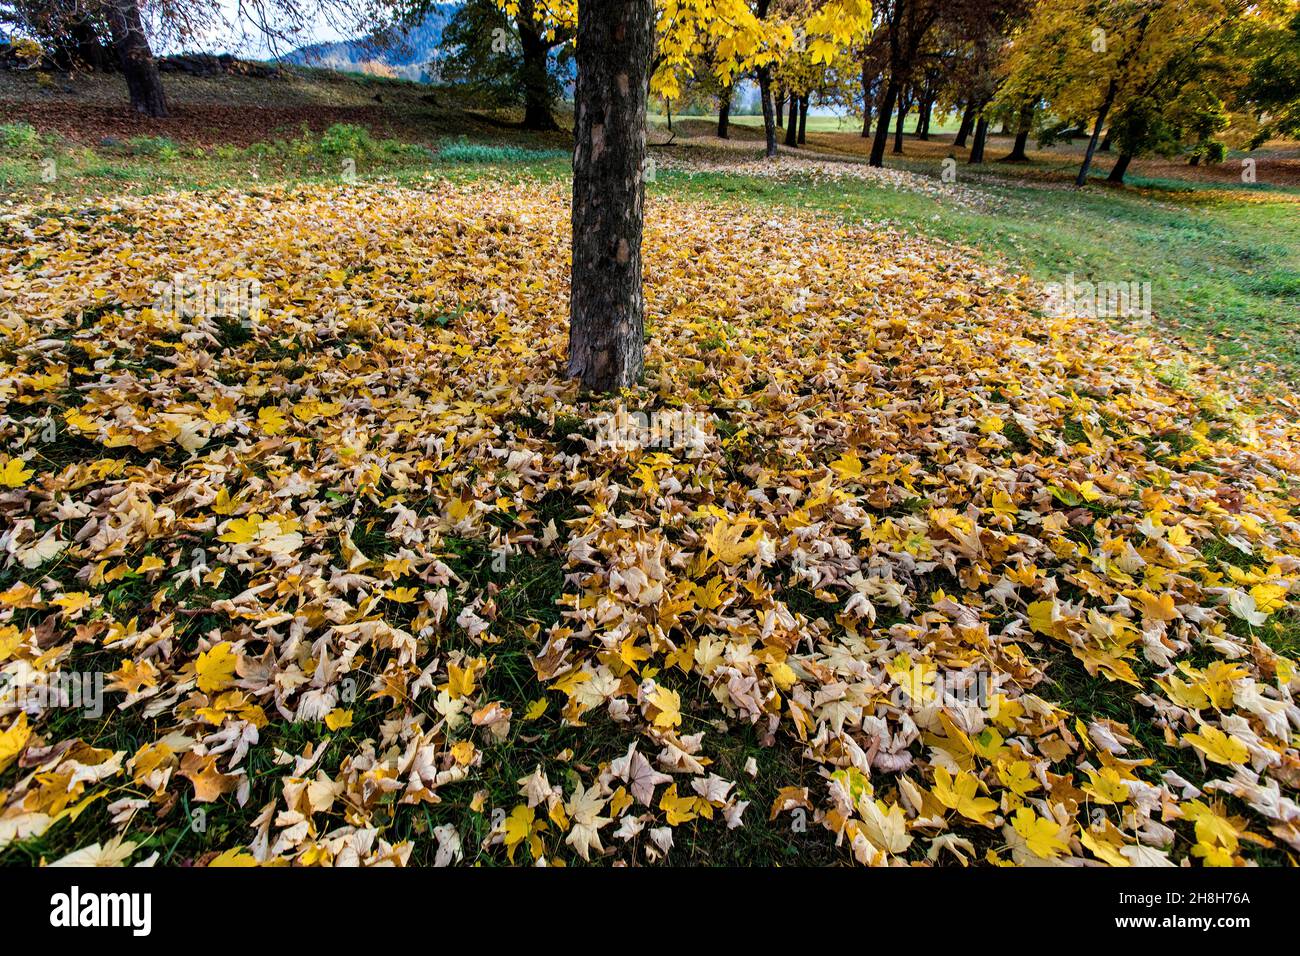 Italien, Trentino-Südtirol, Cavalese, schöner Hintergrund, Herbst in einem Park mit Bäumen und orangefarbenen Herbstblättern auf dem Boden Foto © Federico Meneg Stockfoto